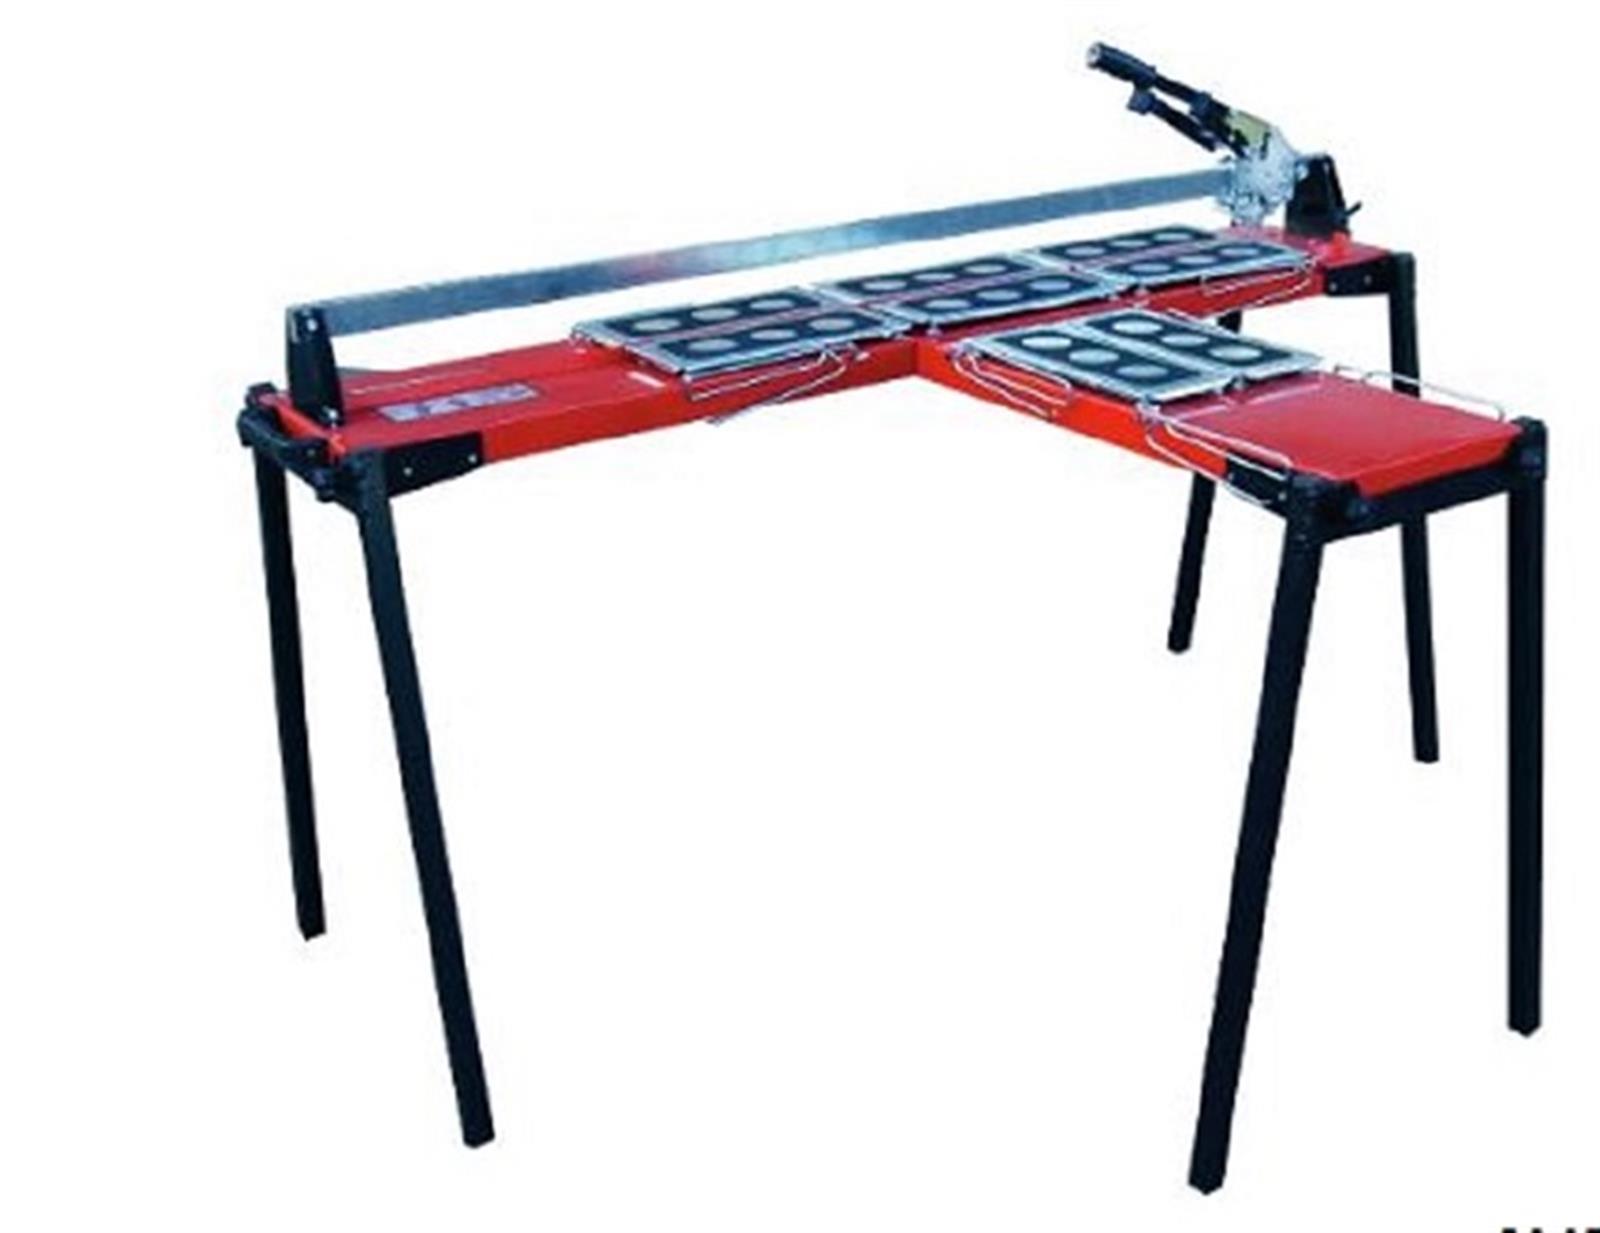 Table latérale GigaCut Plus (hauteur réglable avec pieds et laser) - Coloris : rouge et noir - Pieds